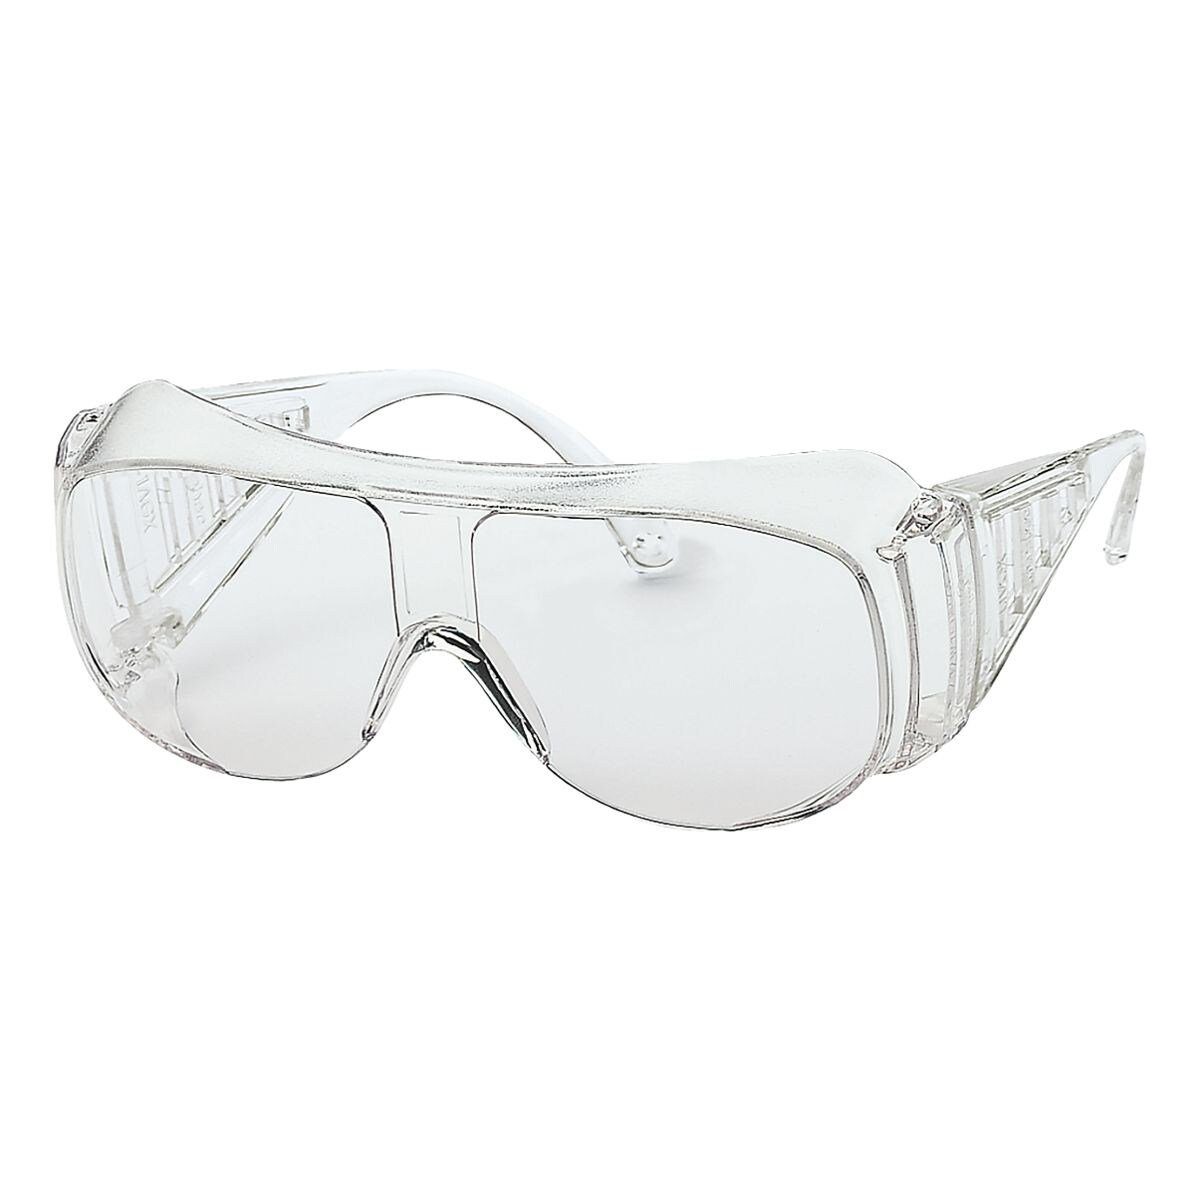 Schutzbrille mit Seitenschutz, längenverstellbar Bügel 9161, Arbeitsschutzbrille Uvex